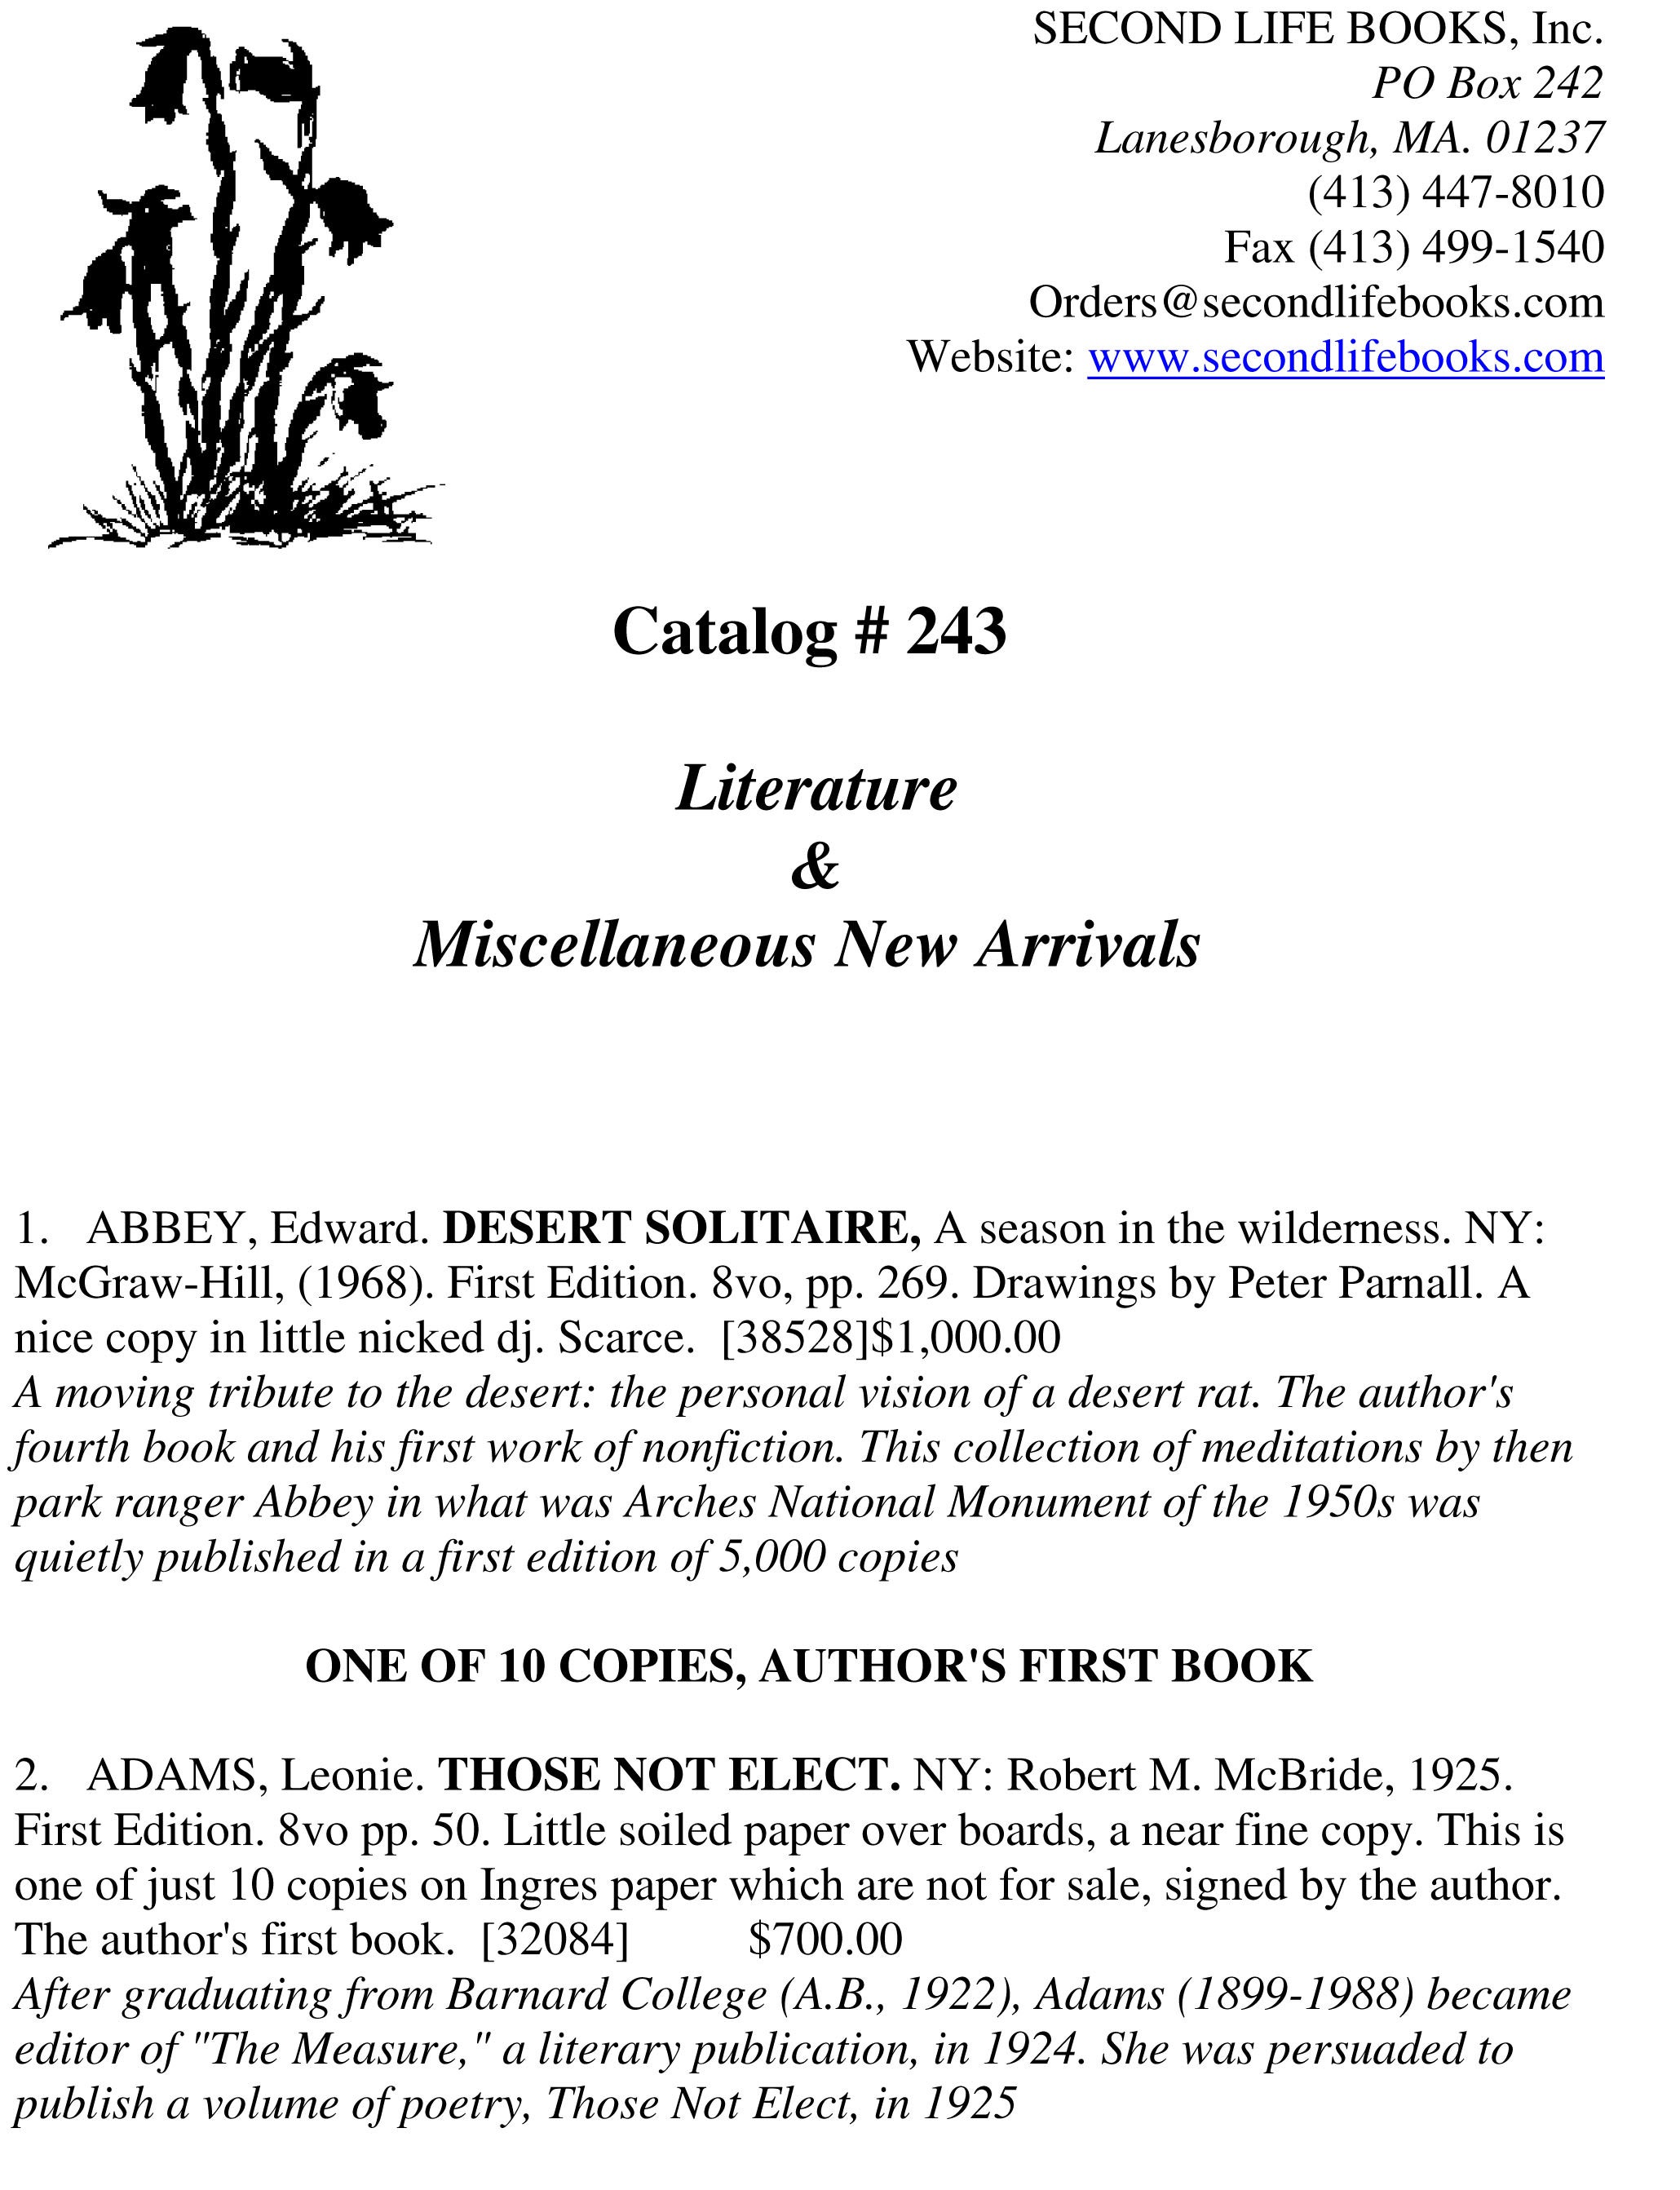 Catalog # 243 - Literature & New Arrivals